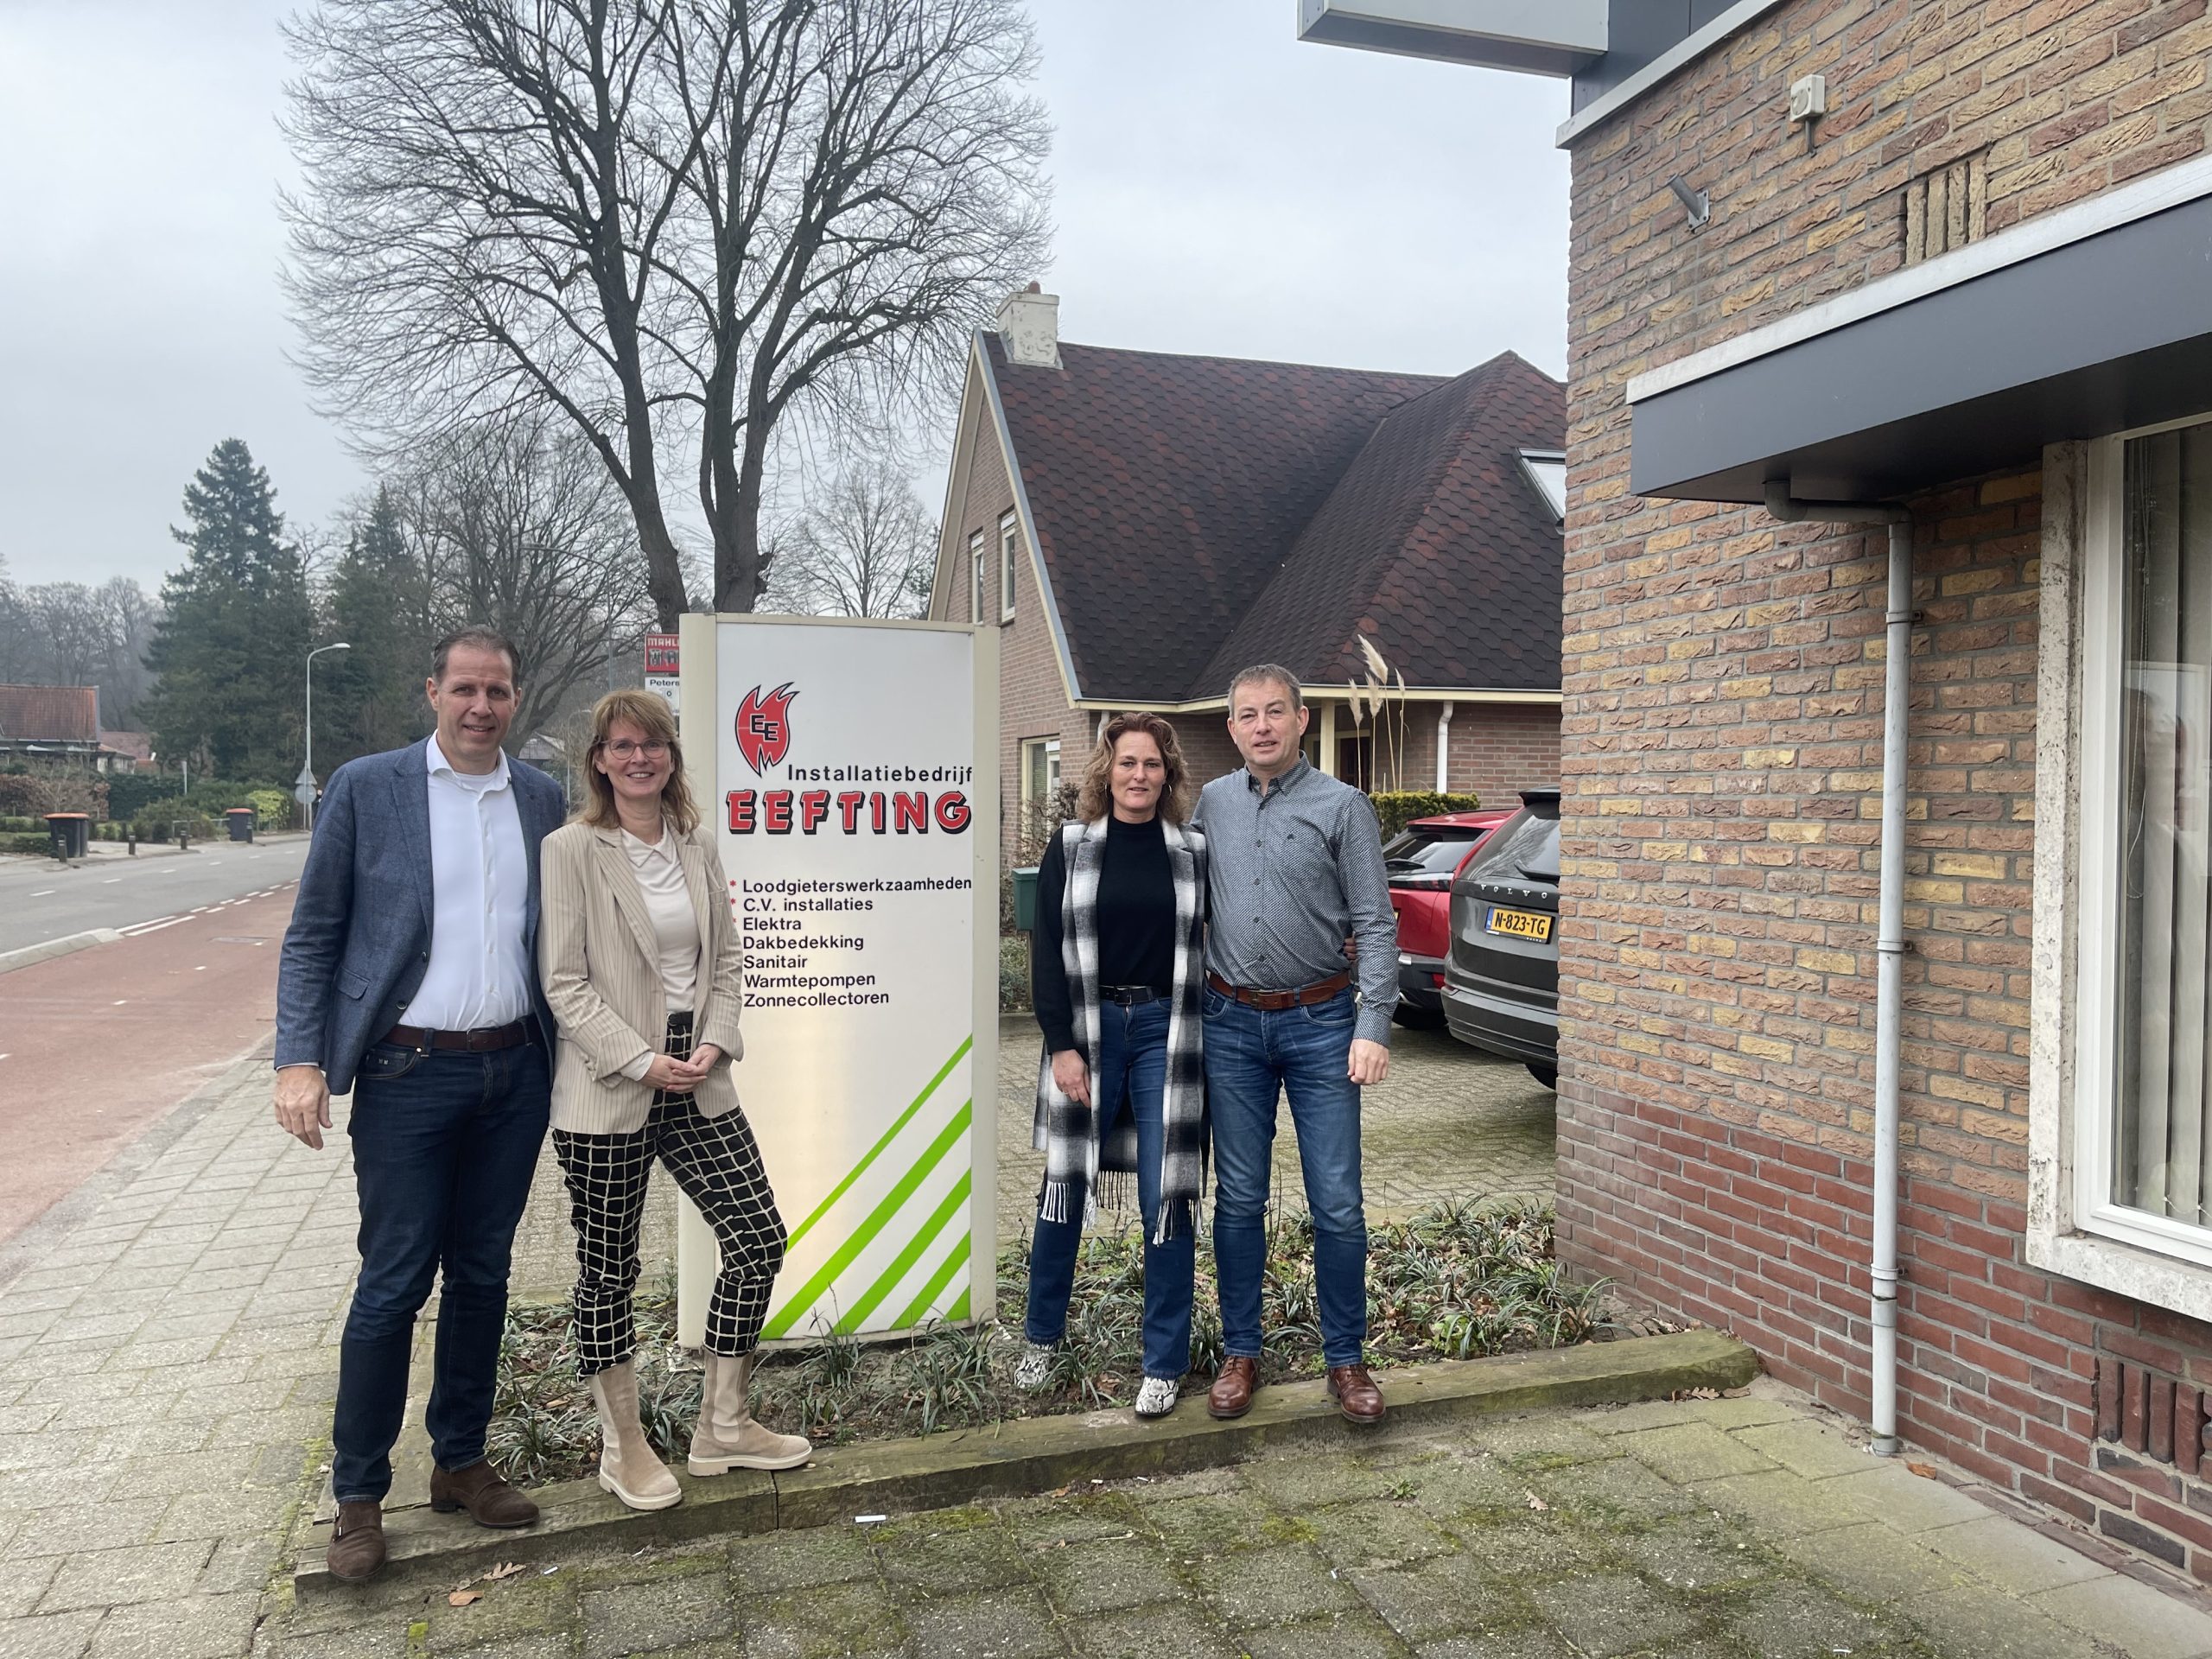 Nijhof Groep Eefting Epse overname